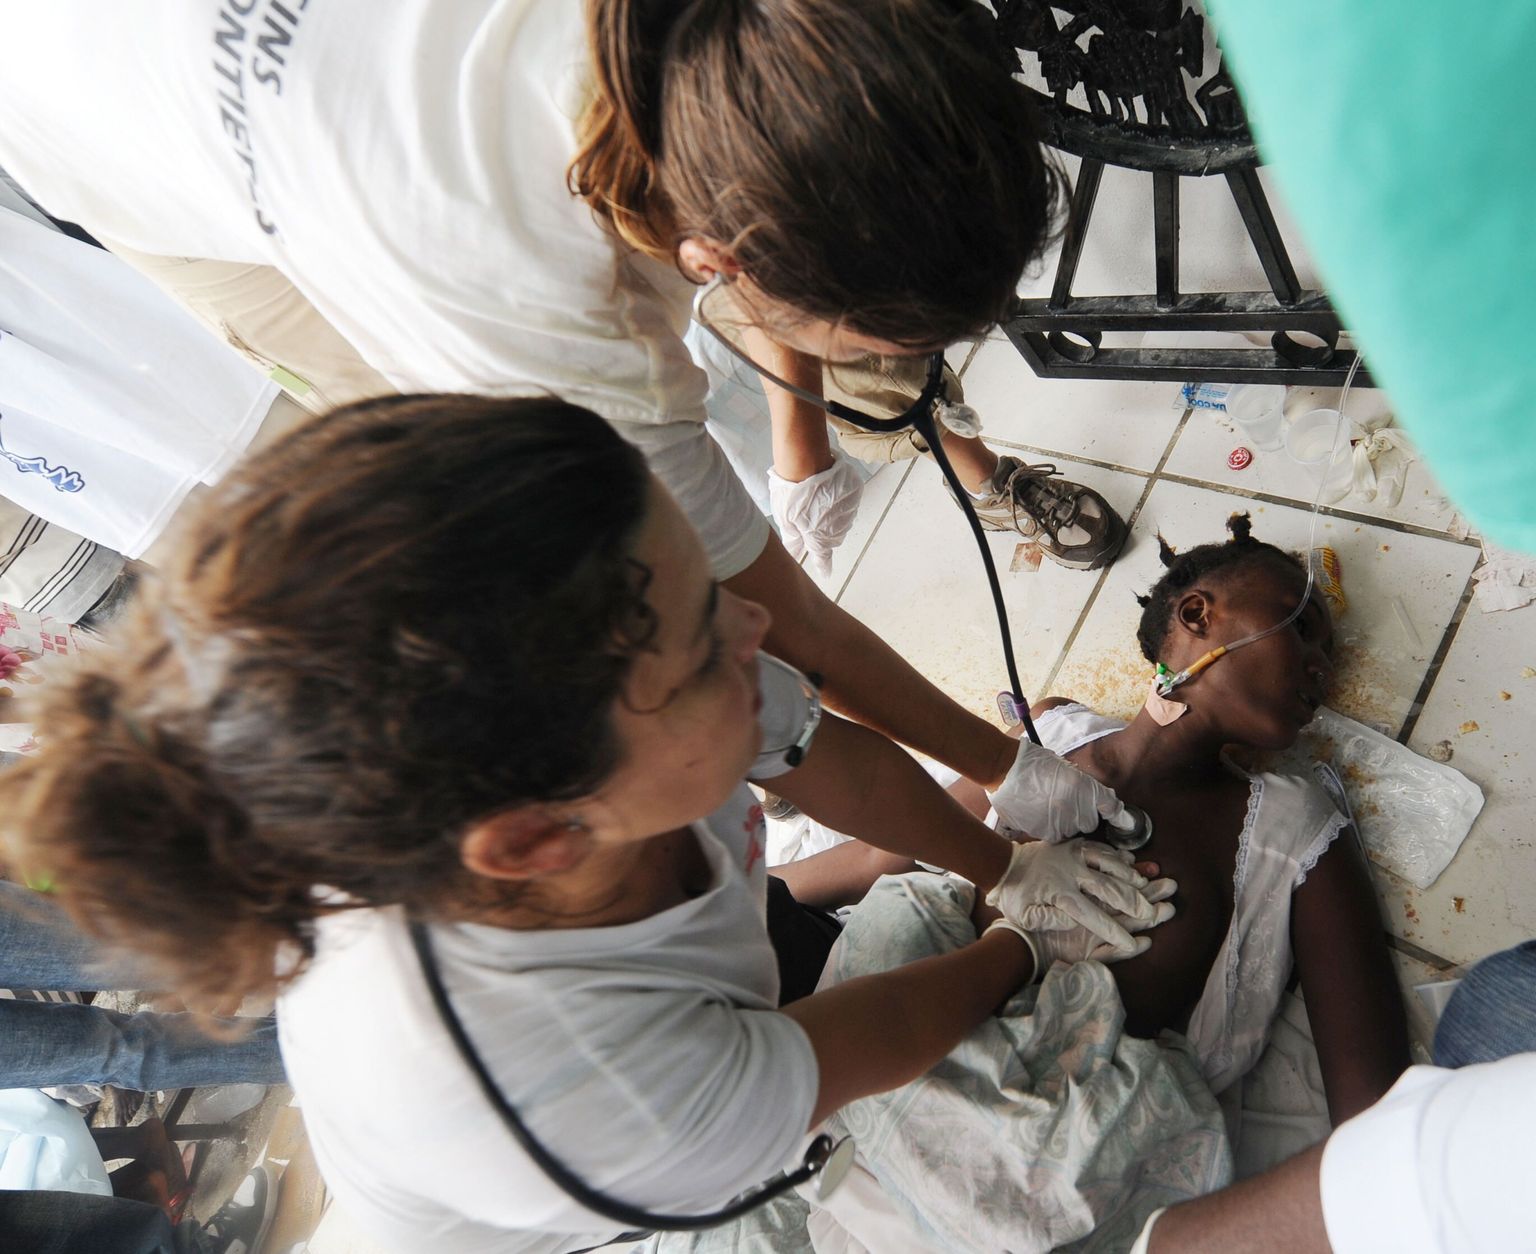 Haitit ähvardab kooleraepideemia